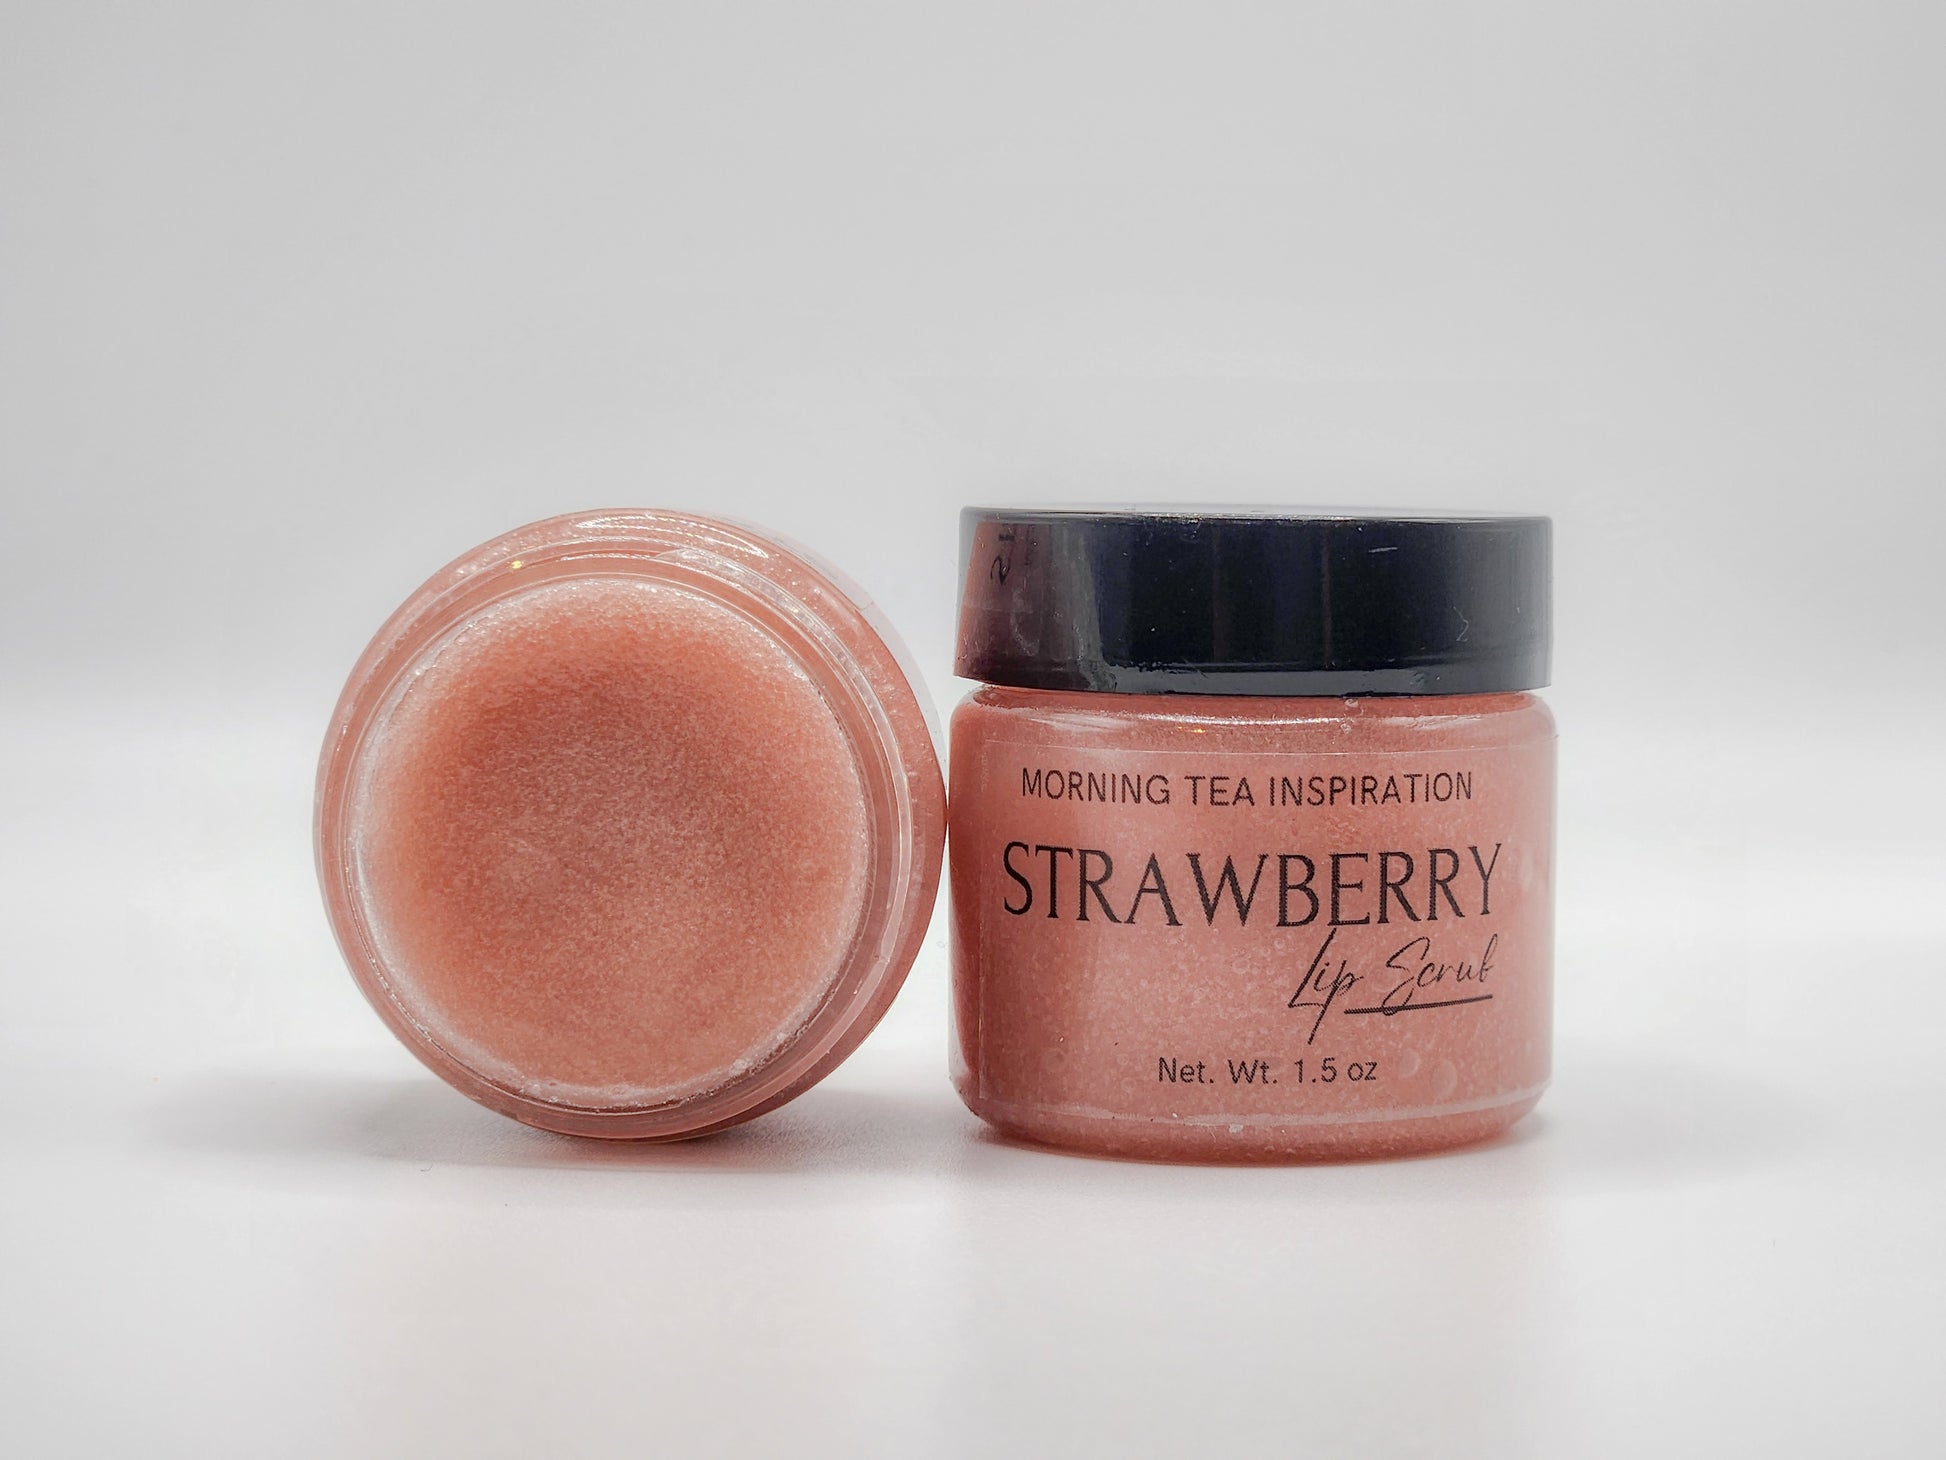 1.5 oz of strawberry flavor sugar lip scrub